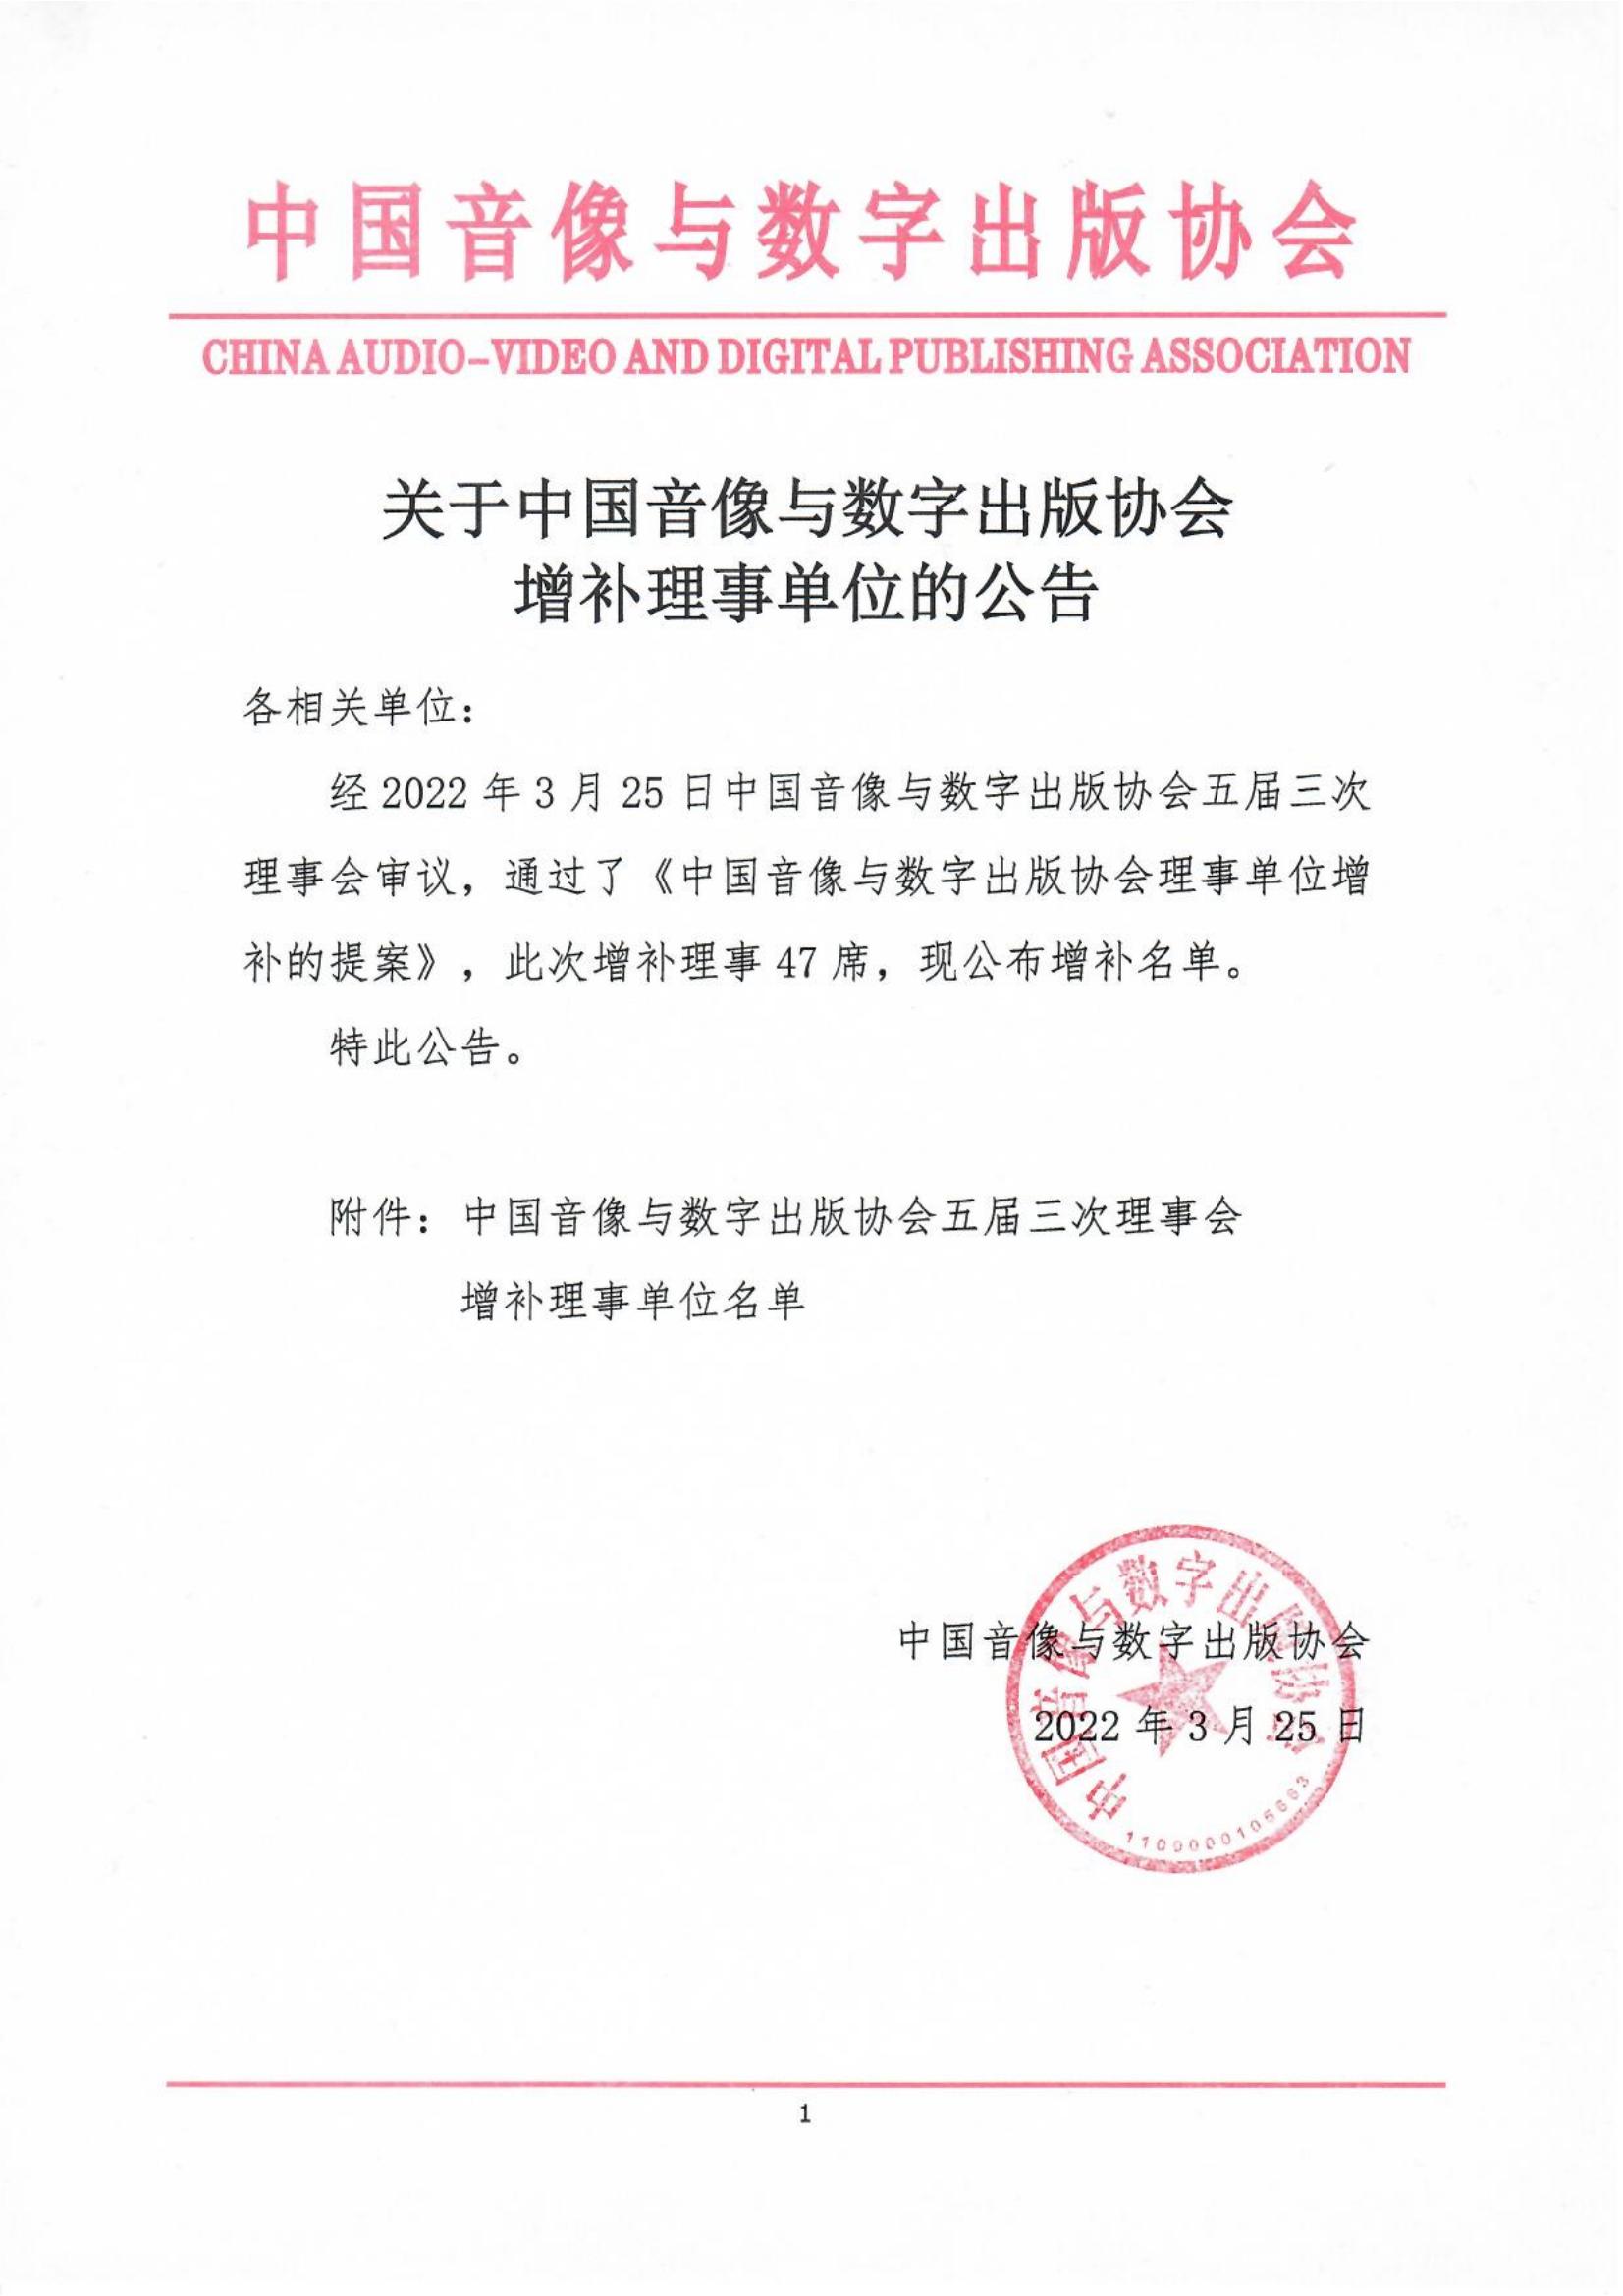 關于中國音像與數字出版協會增補理事單位的公告_00.jpg